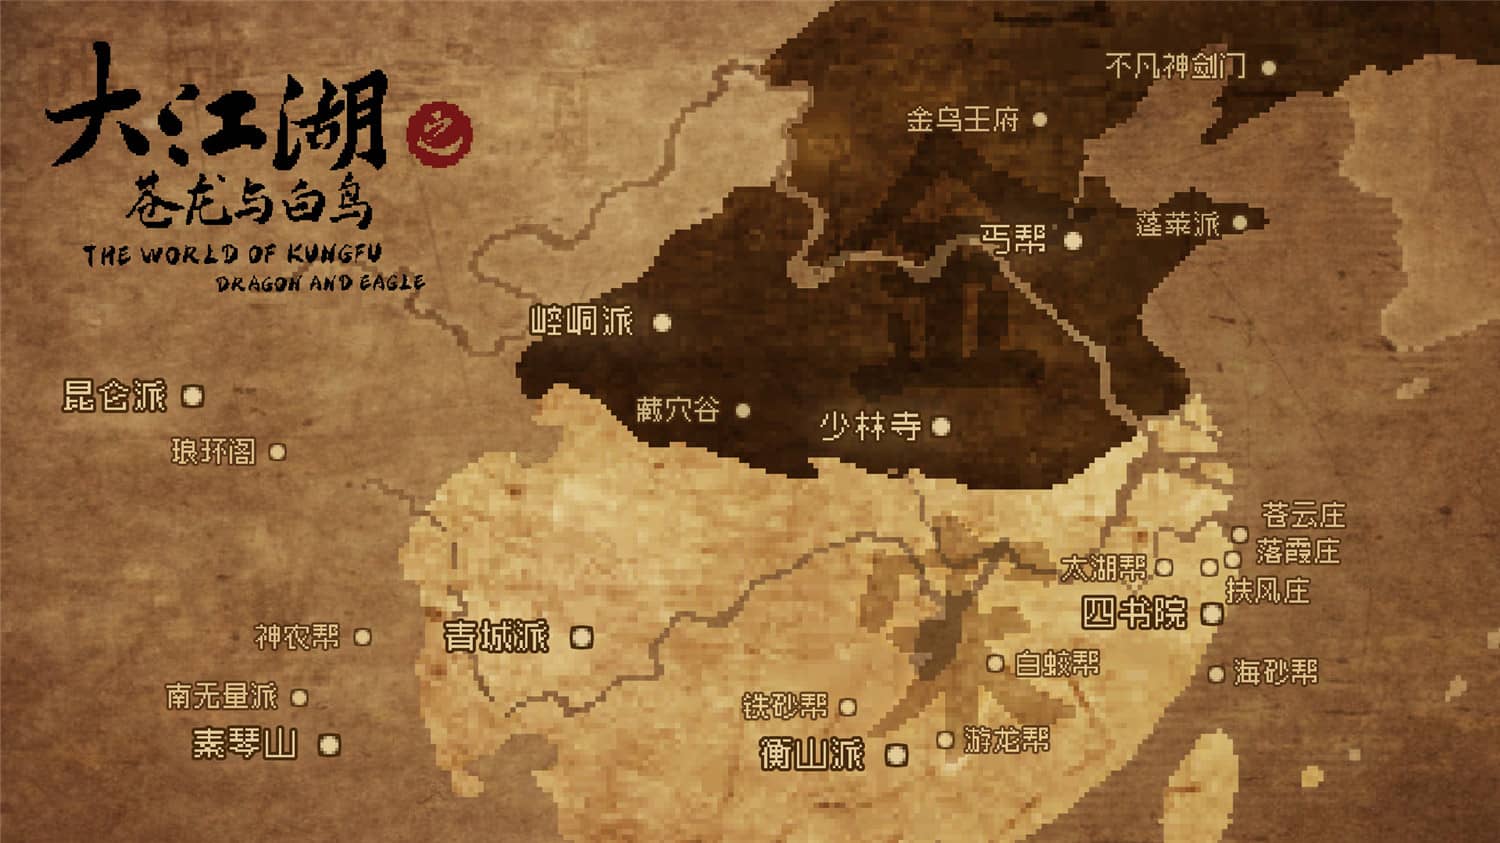 大江湖之苍龙与白鸟/The World Of Kong Fu插图3